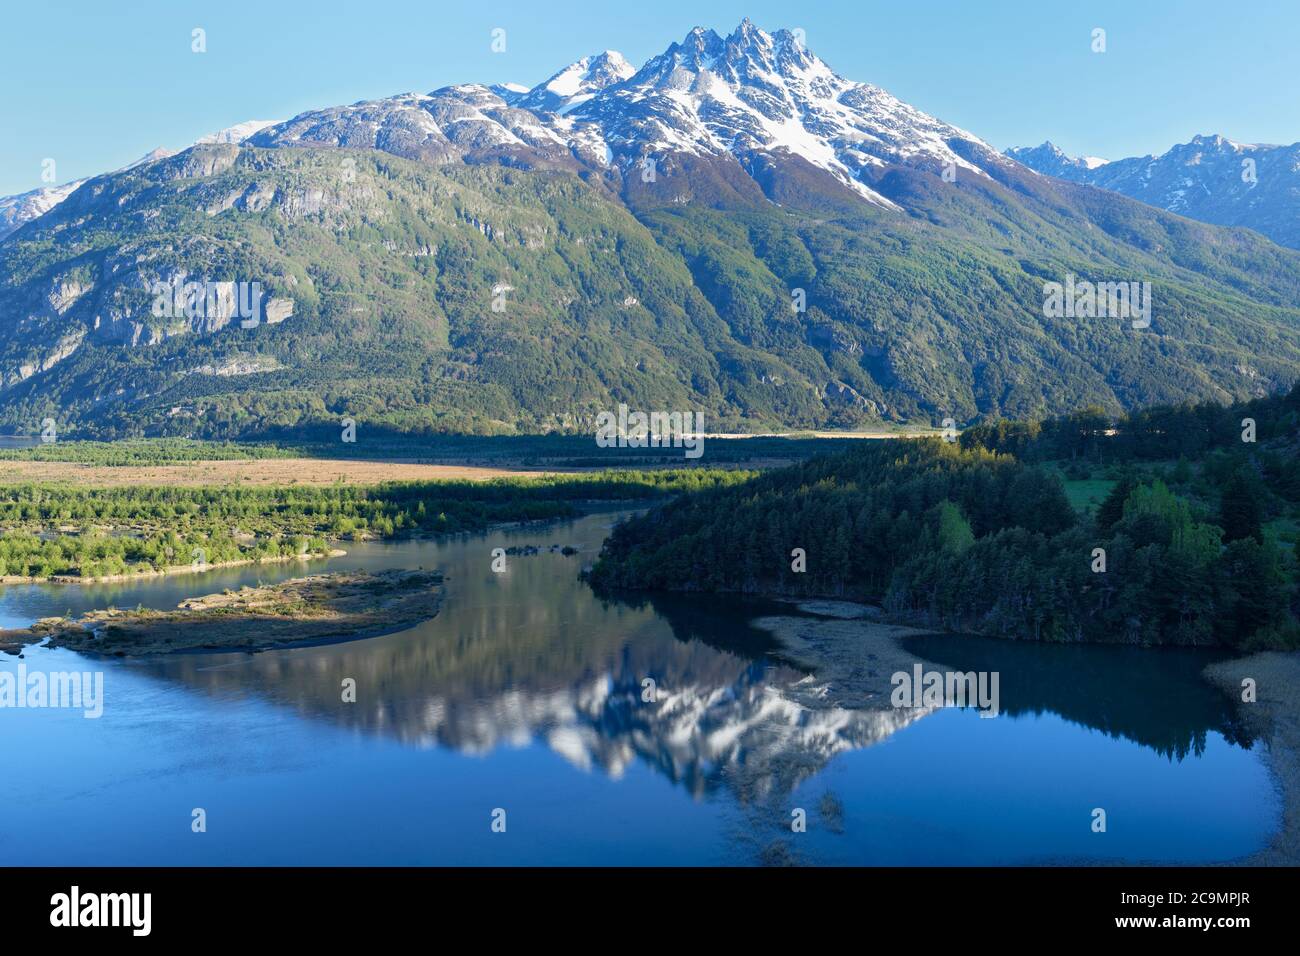 Chaîne de montagnes Castillo et vallée de la rivière Ibanez vue depuis la route panaméricaine, région d'Aysen, Patagonie, Chili Banque D'Images